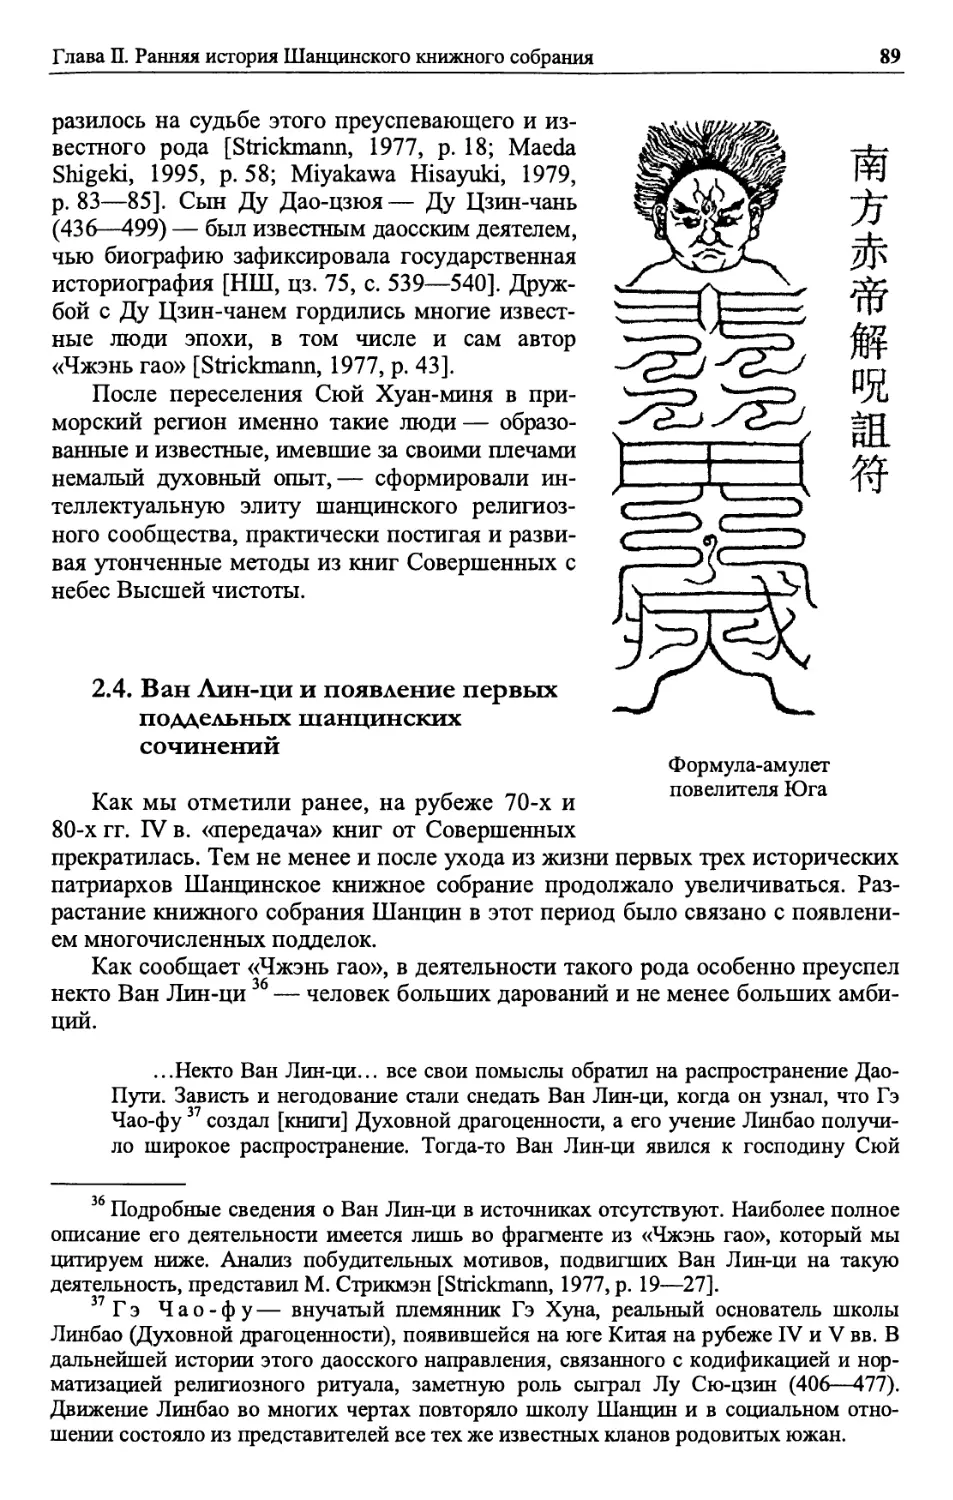 2.4. Ван Лин-ци и появление первых поддельных шанцинских сочинений